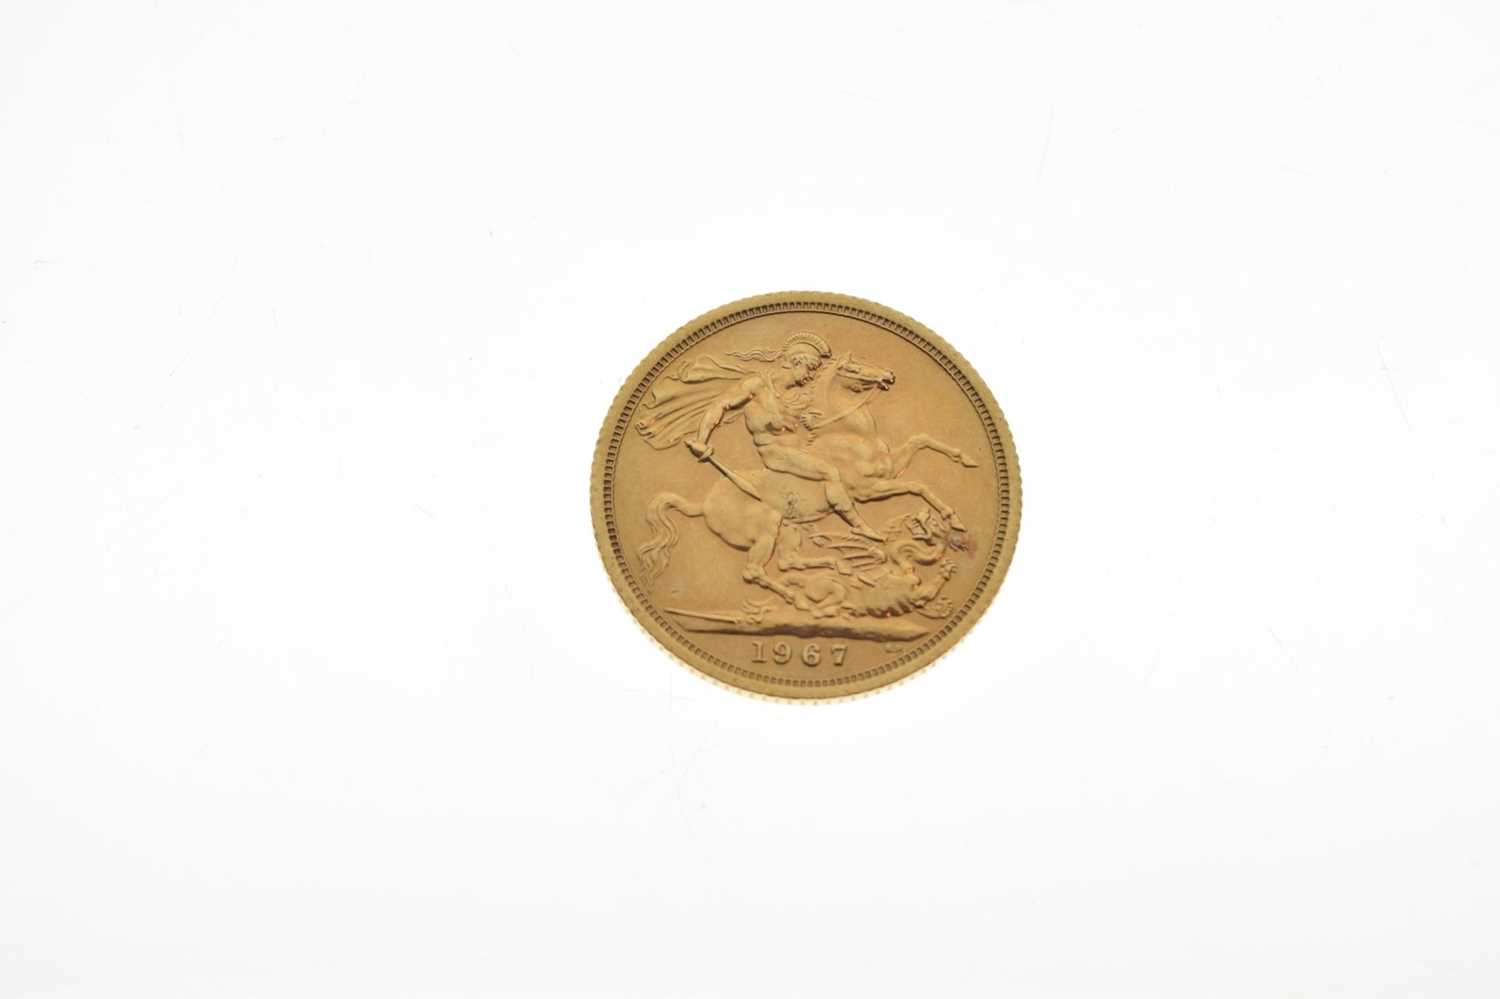 Elizabeth II gold sovereign, 1967 - Image 3 of 4